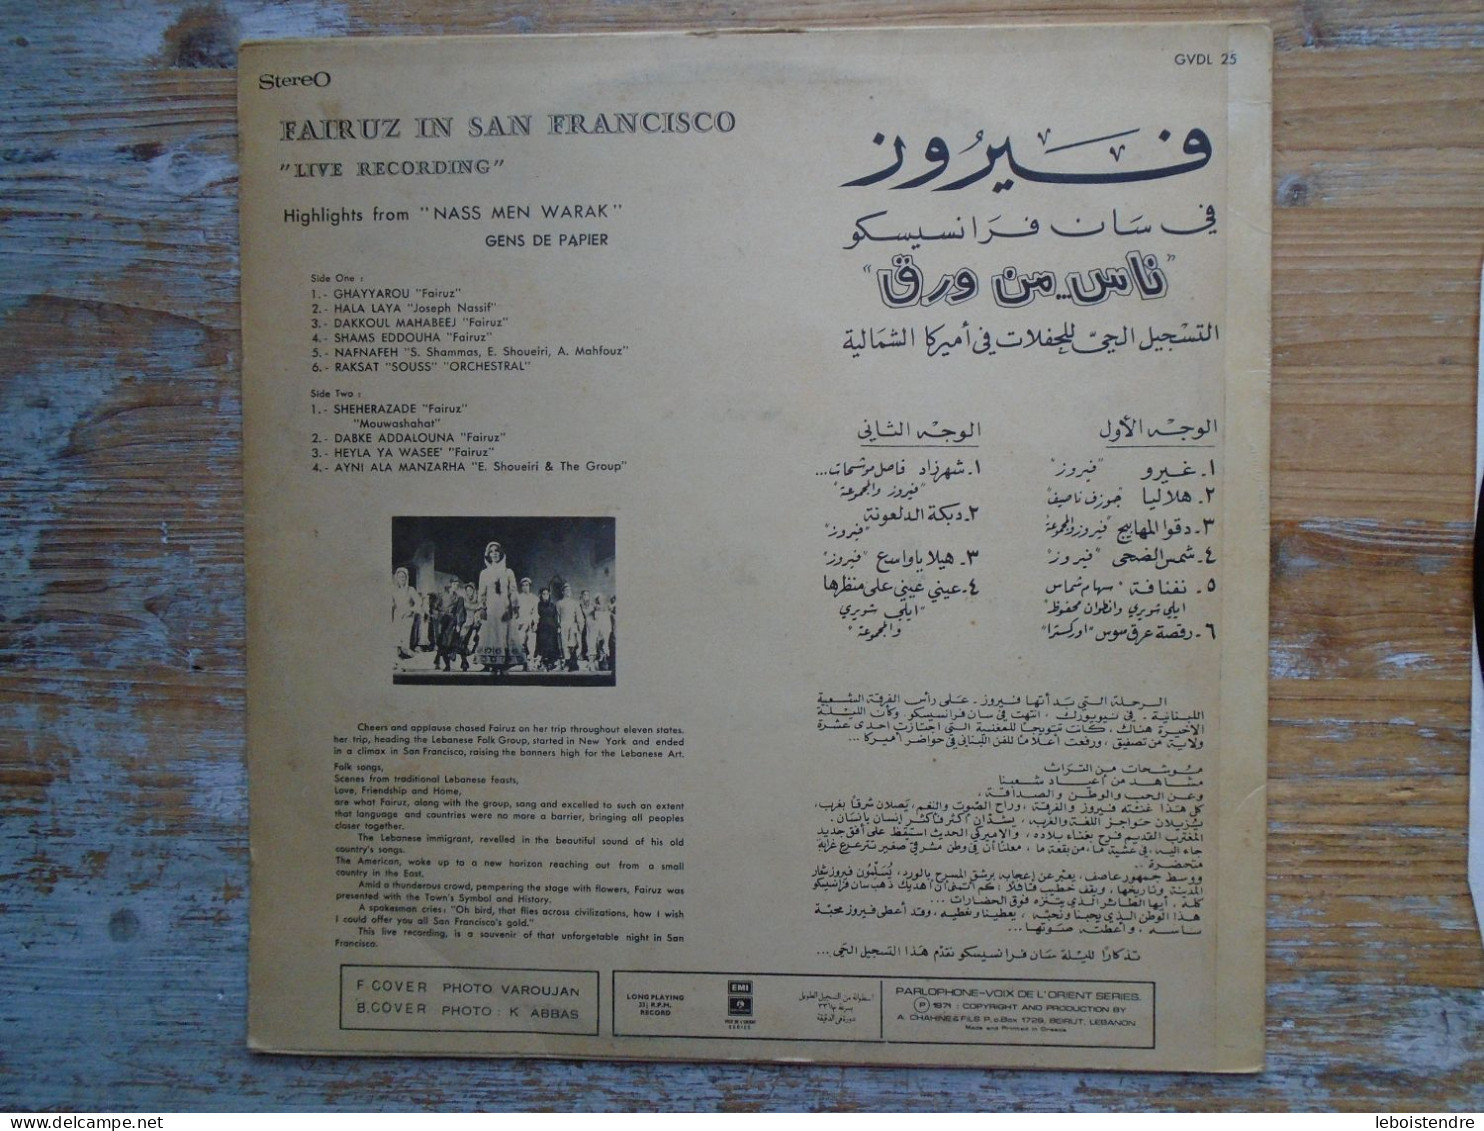 RARE 33 T LP VINYLE FAIROUZ FAIR UZ IN SAN FRANCISCO GVDL 25 BIEM VOIX DE L ORIENT SERIES GENS DE PAPIER - World Music